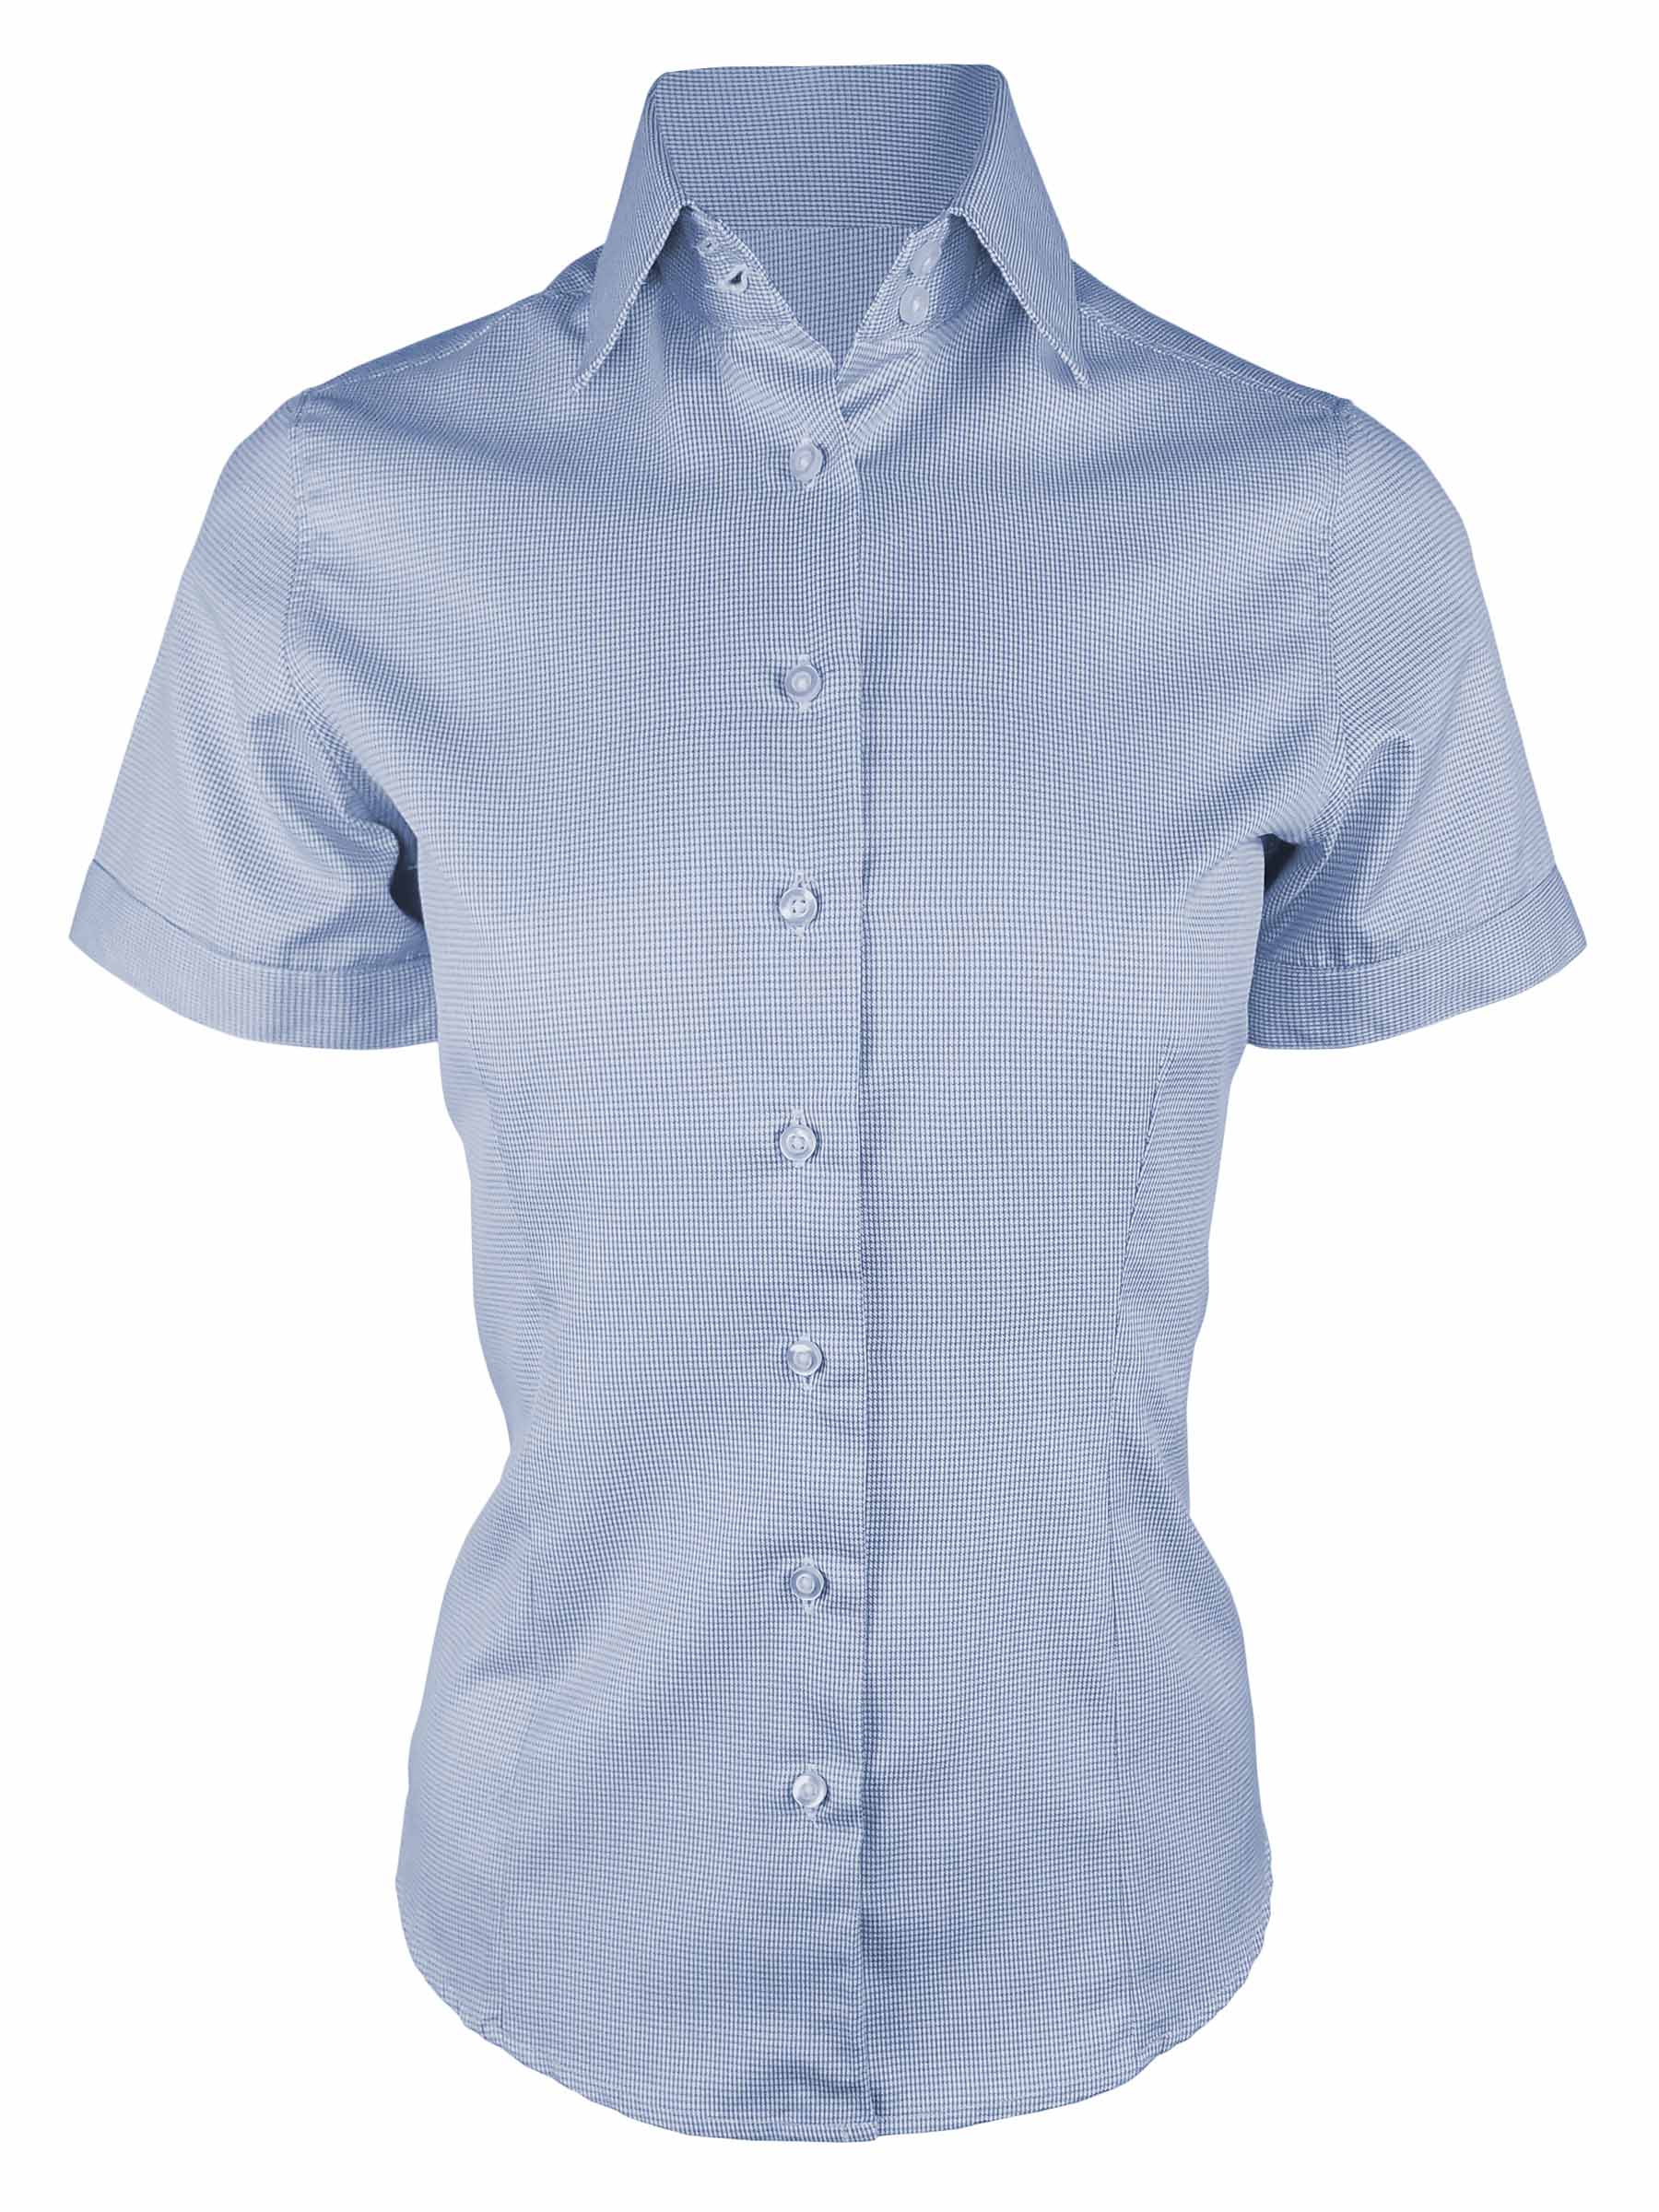 Women's Wilson Shirt - Blue Houndstooth Short Sleeve - Uniform Edit